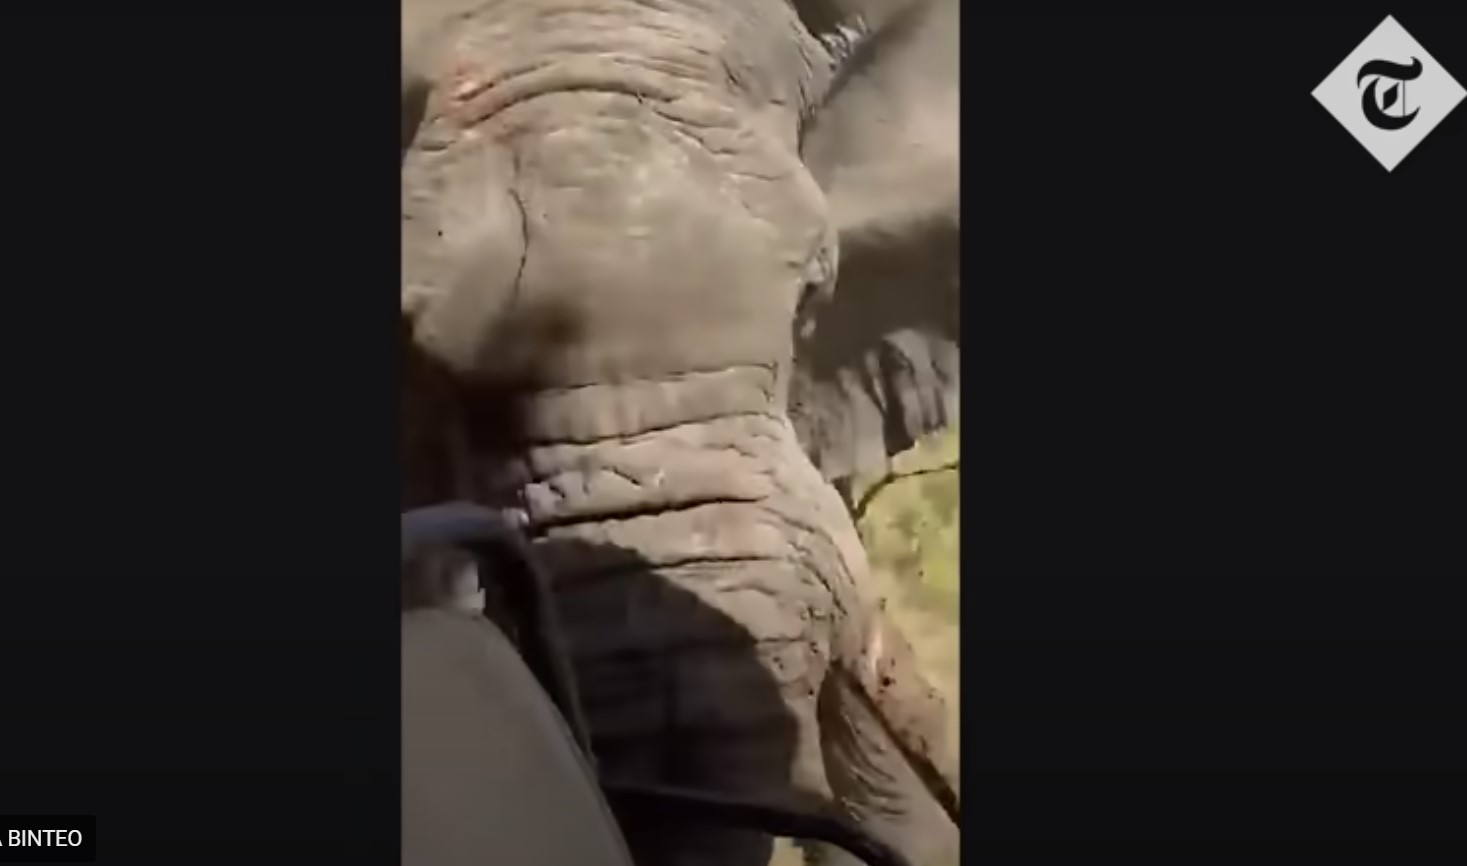 Ελέφαντας